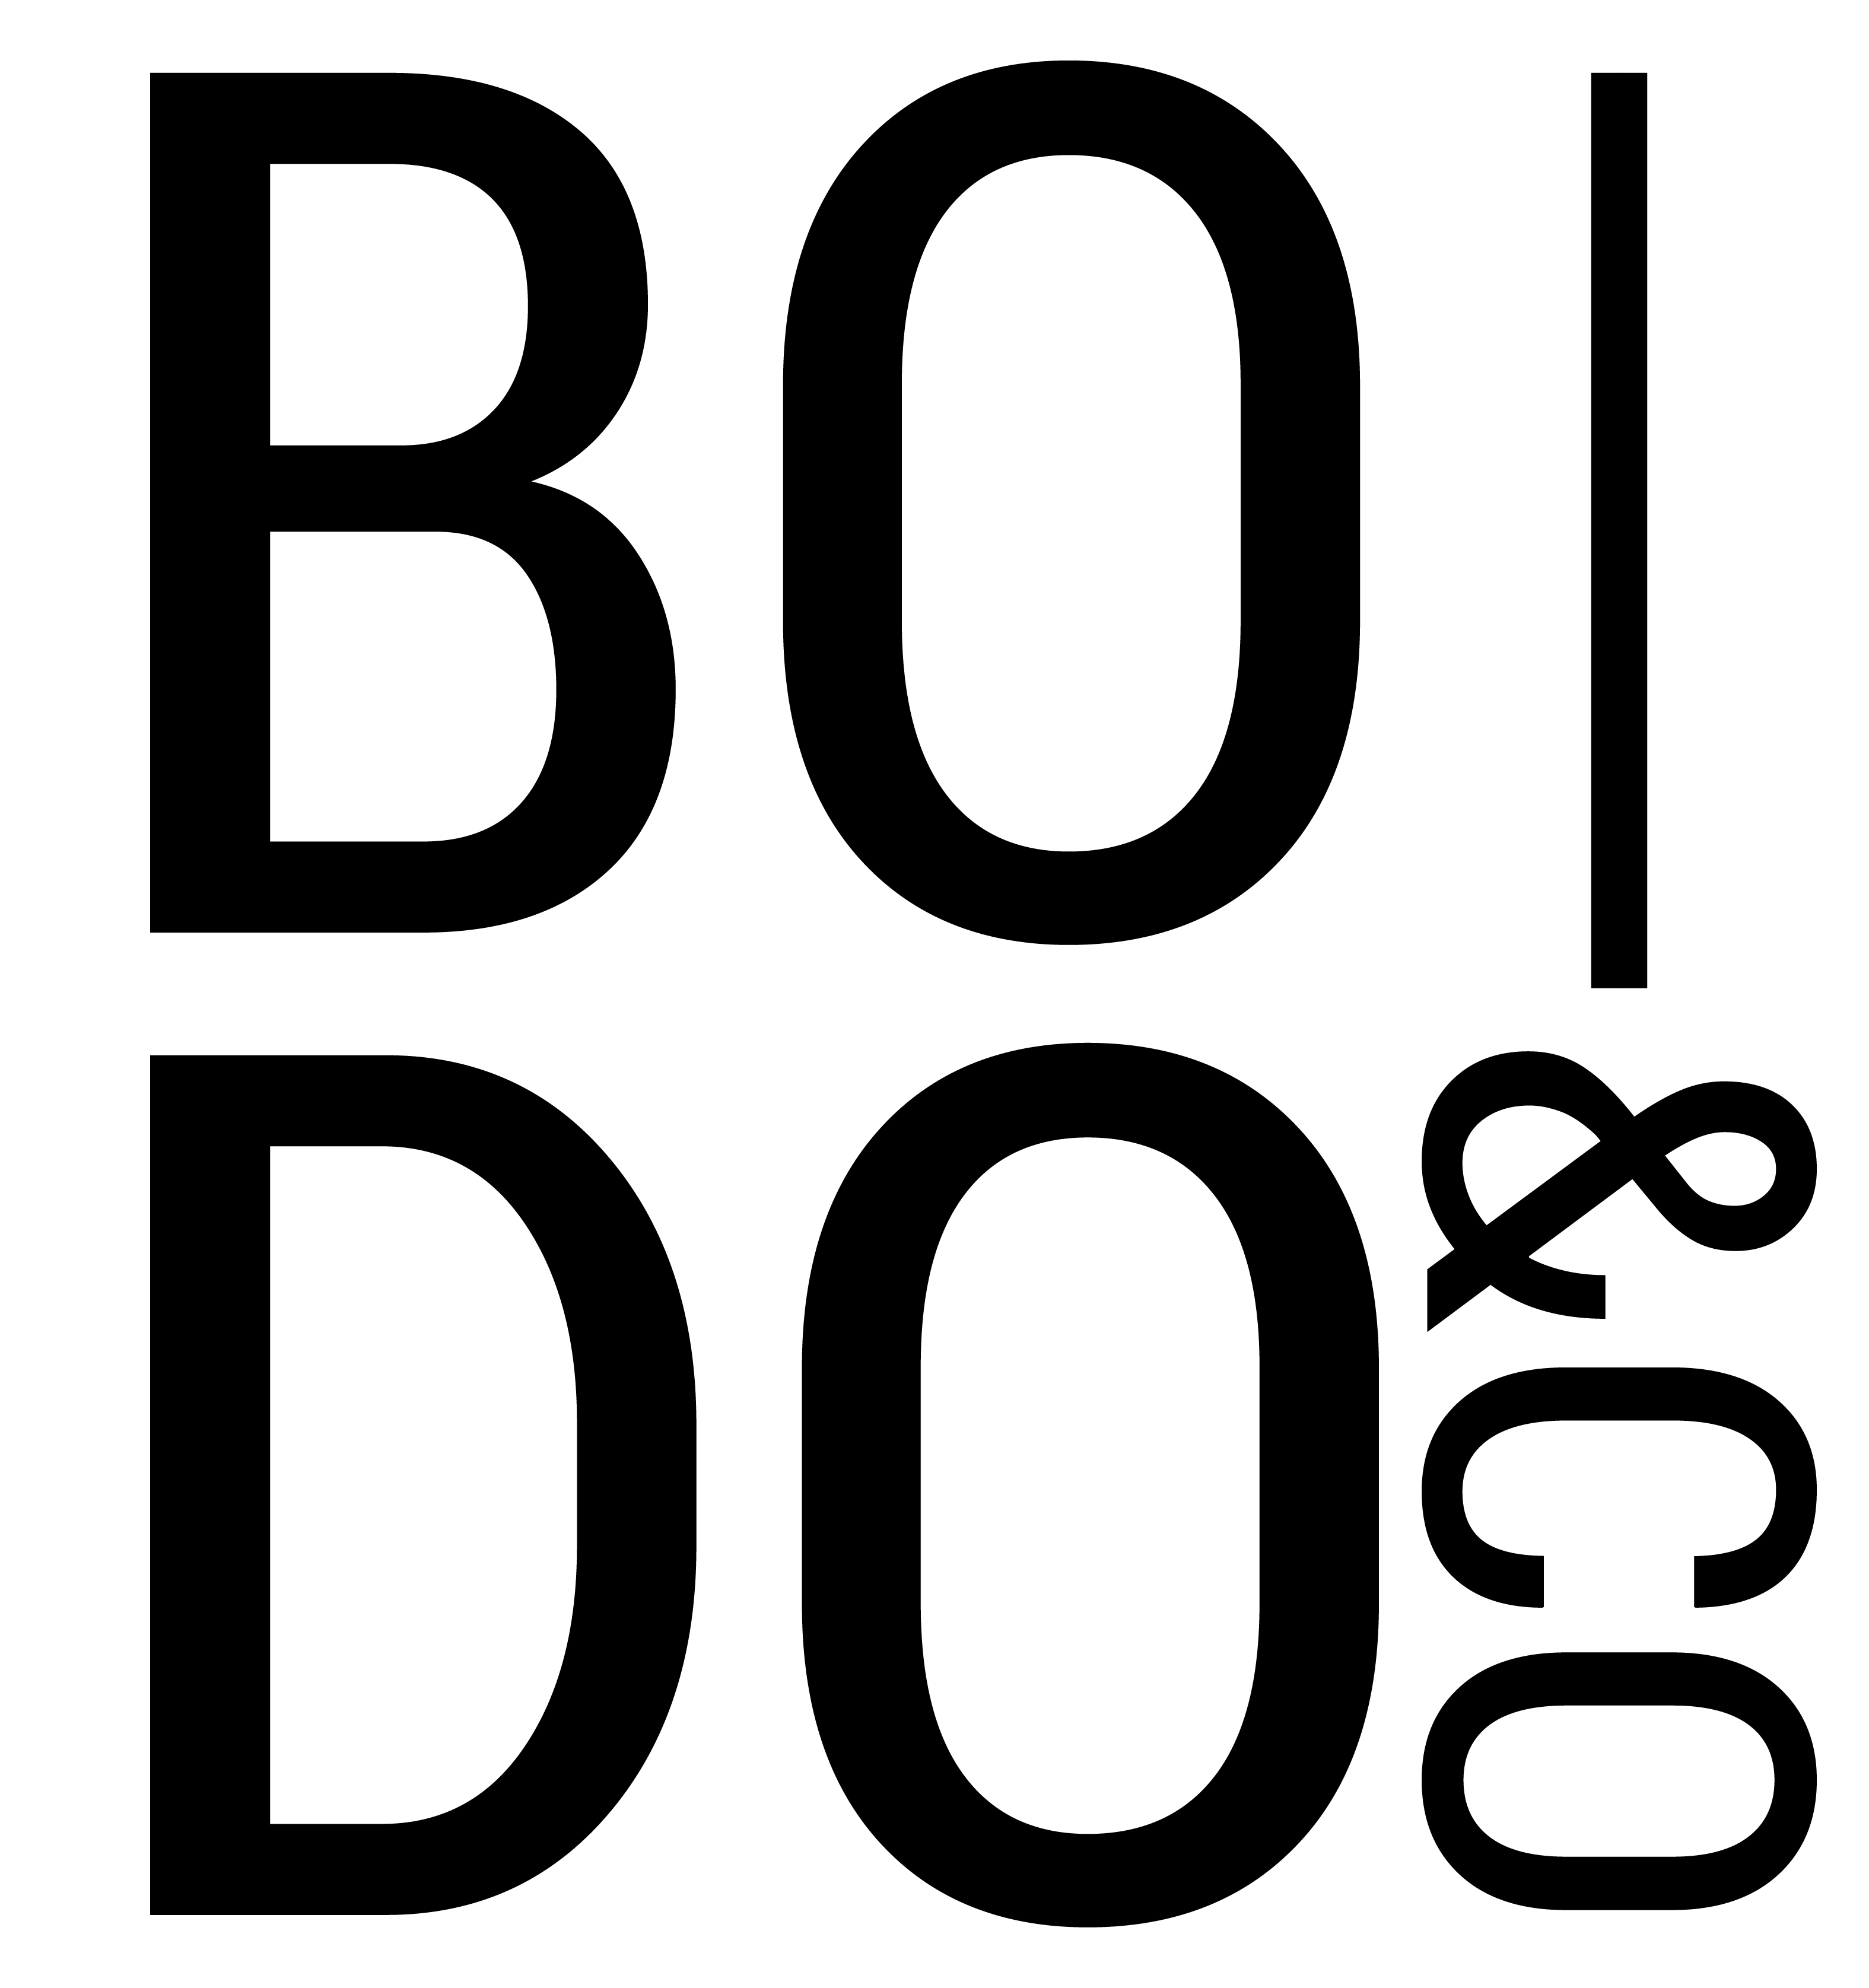 Bodo & Co